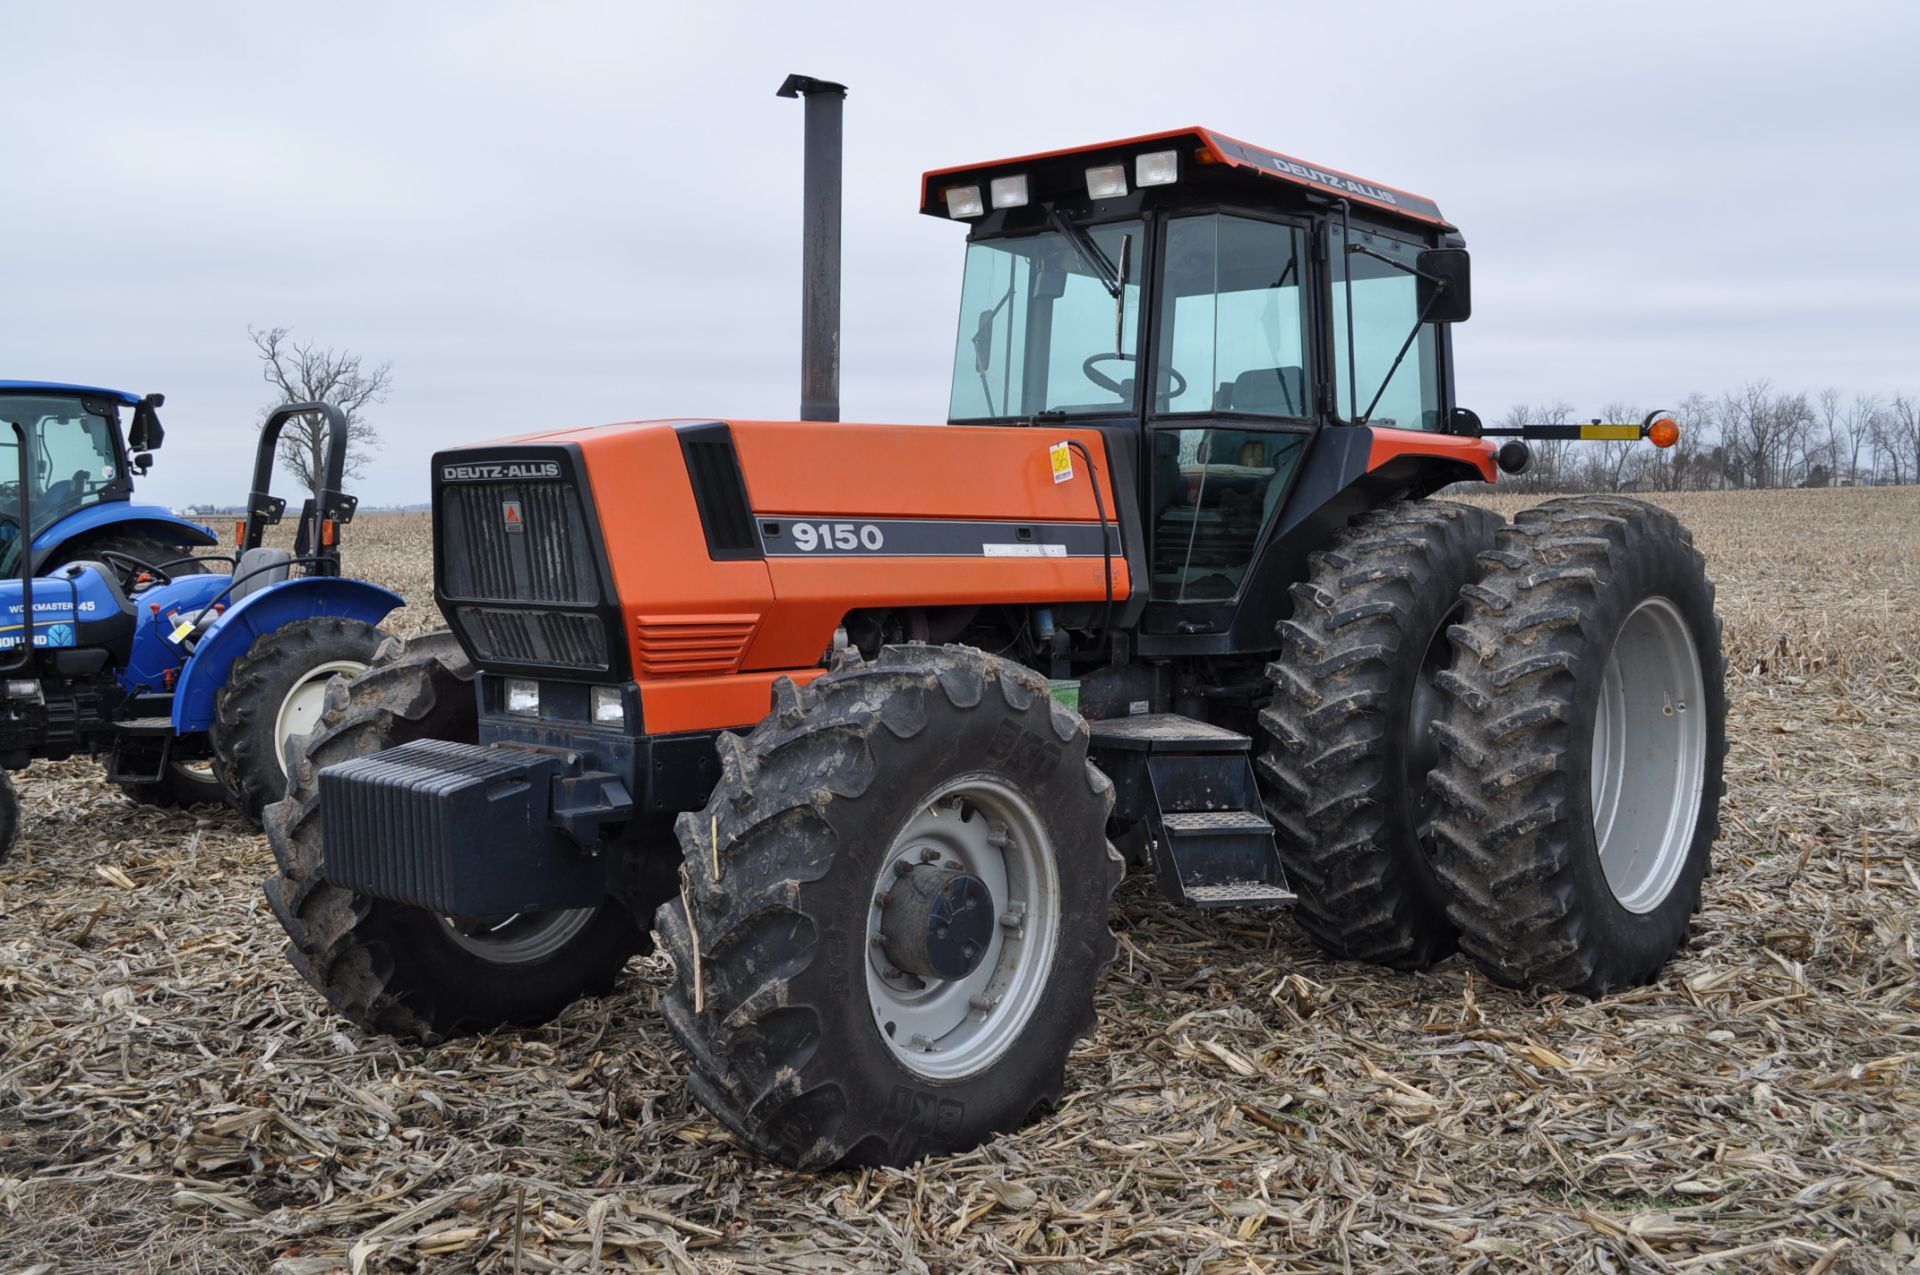 Deutz Allis 9150 tractor, MFWD, 18.4 R 42 duals, 420/85 R 28 tires, 6+3 speed range, 2 hyd